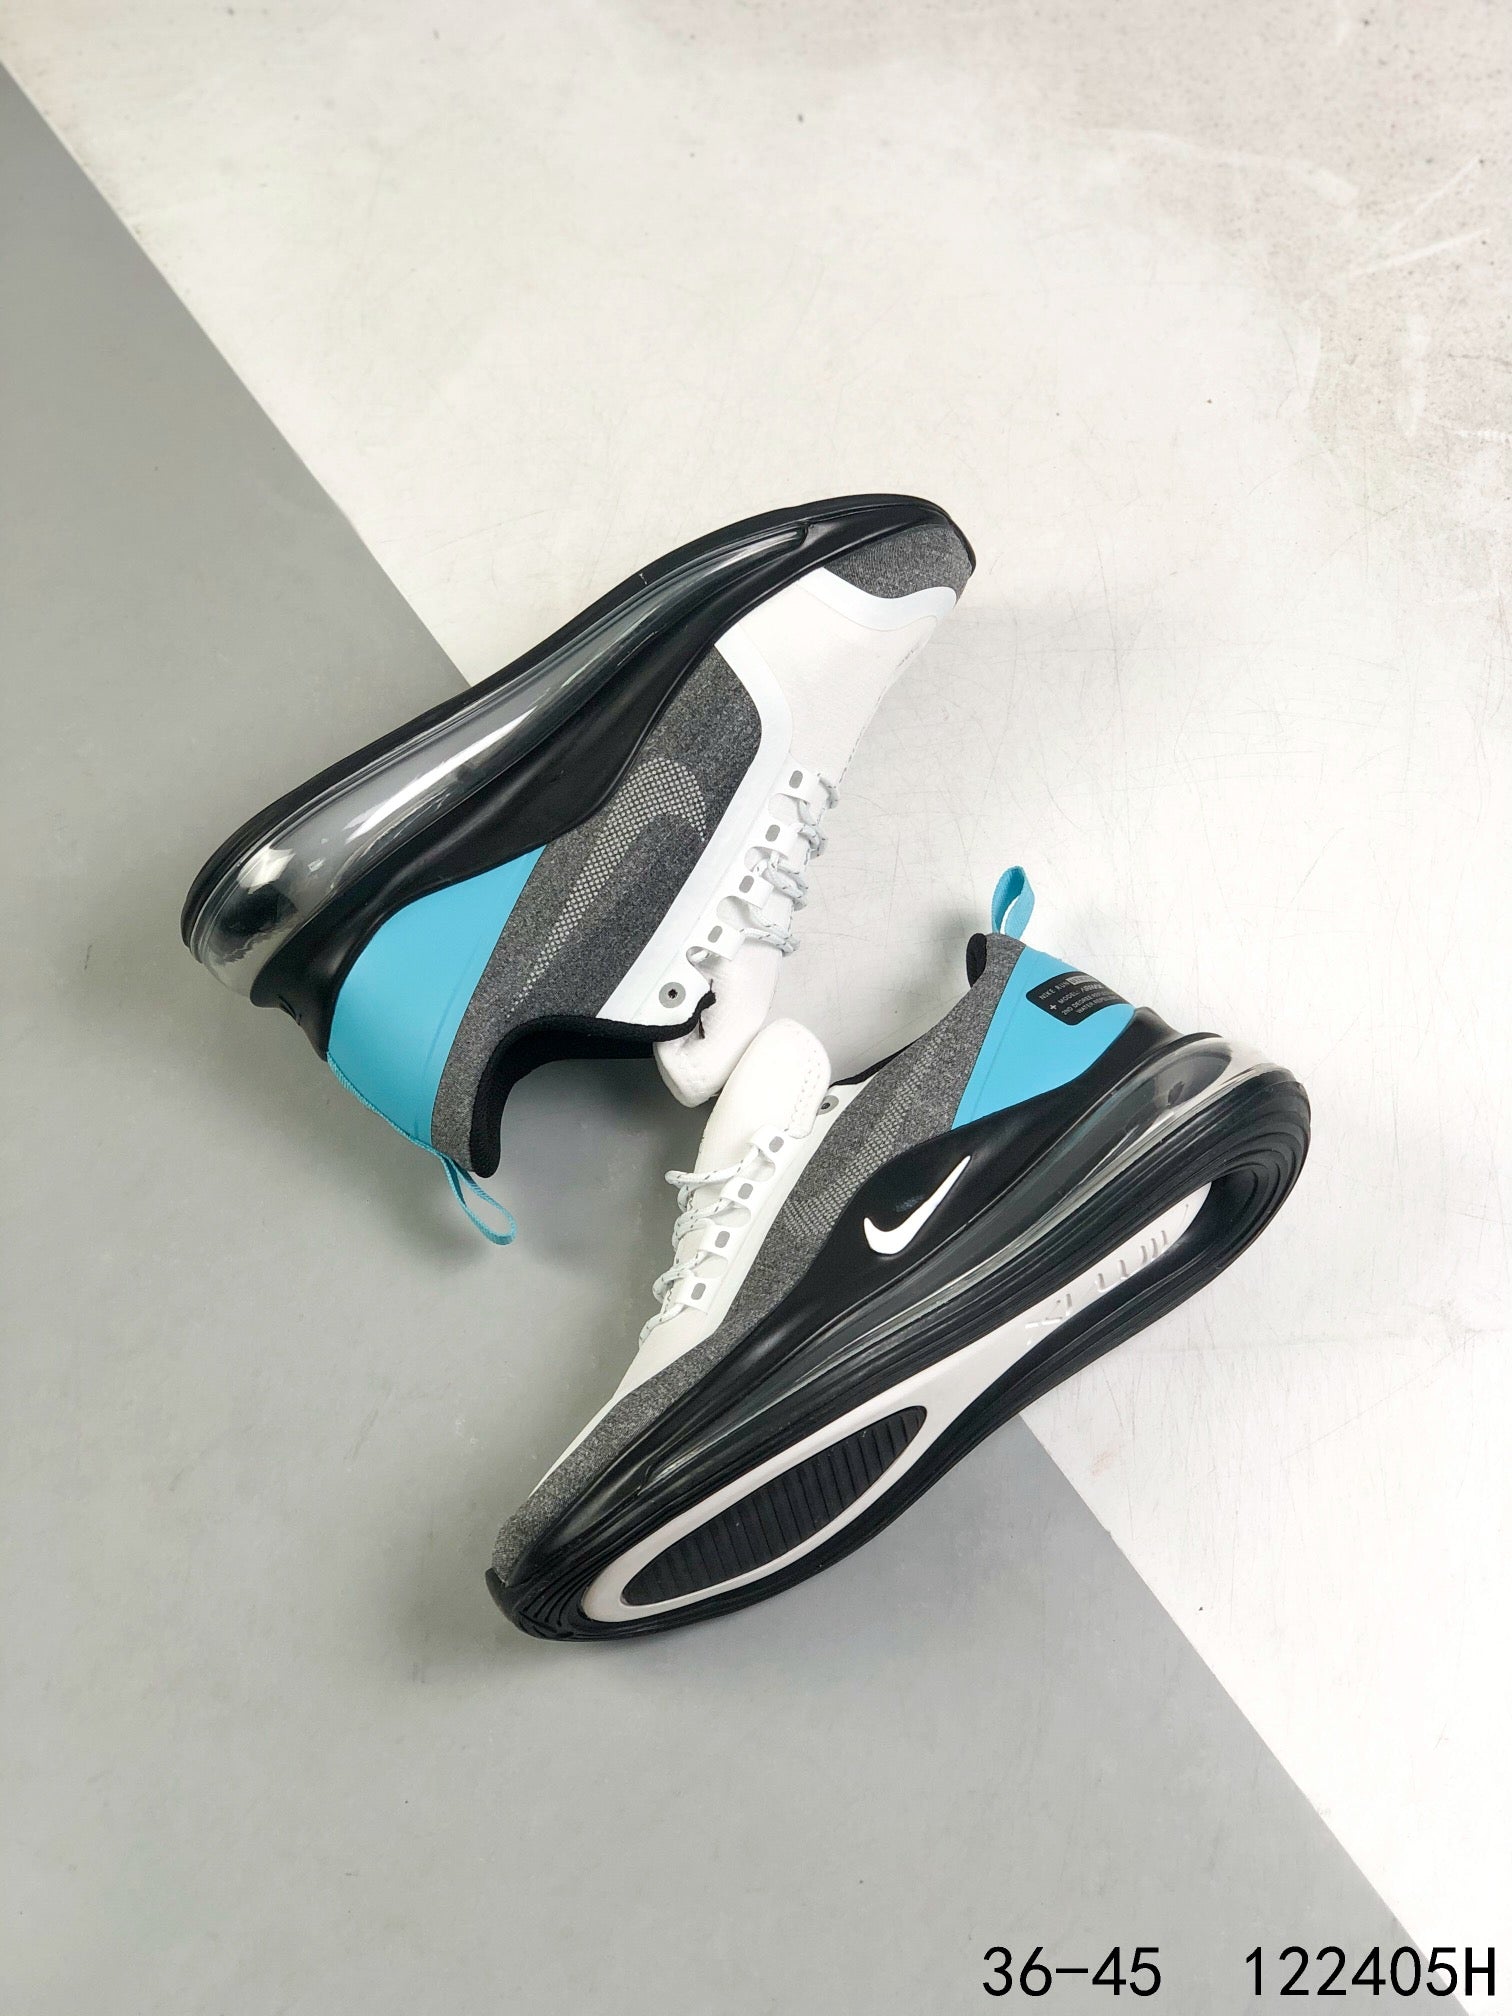 Nike Air Max 720 OBJ Hot Fashion Casual Shoes Sneaker Sport Runn